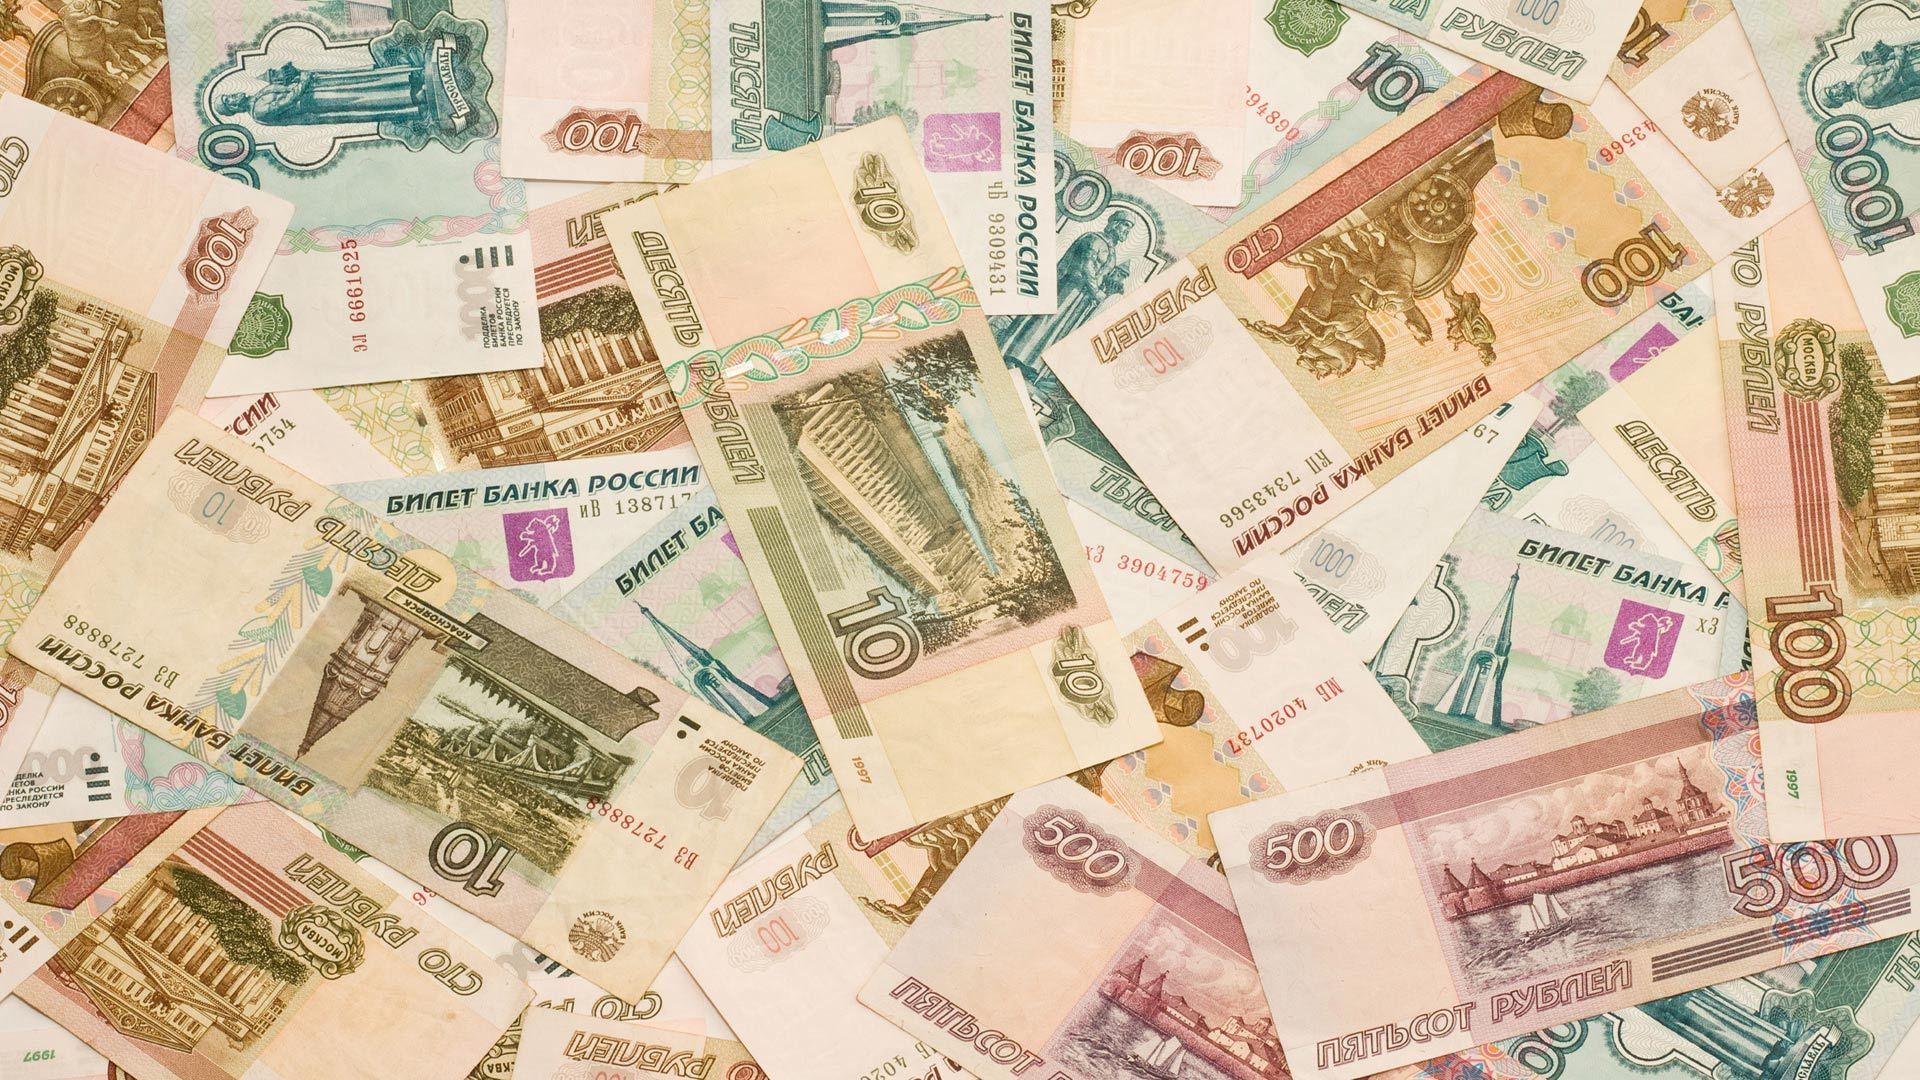 Что оказывает влияние на курс российской валюты? - 28 июля 2016 - Телеканал новин 24